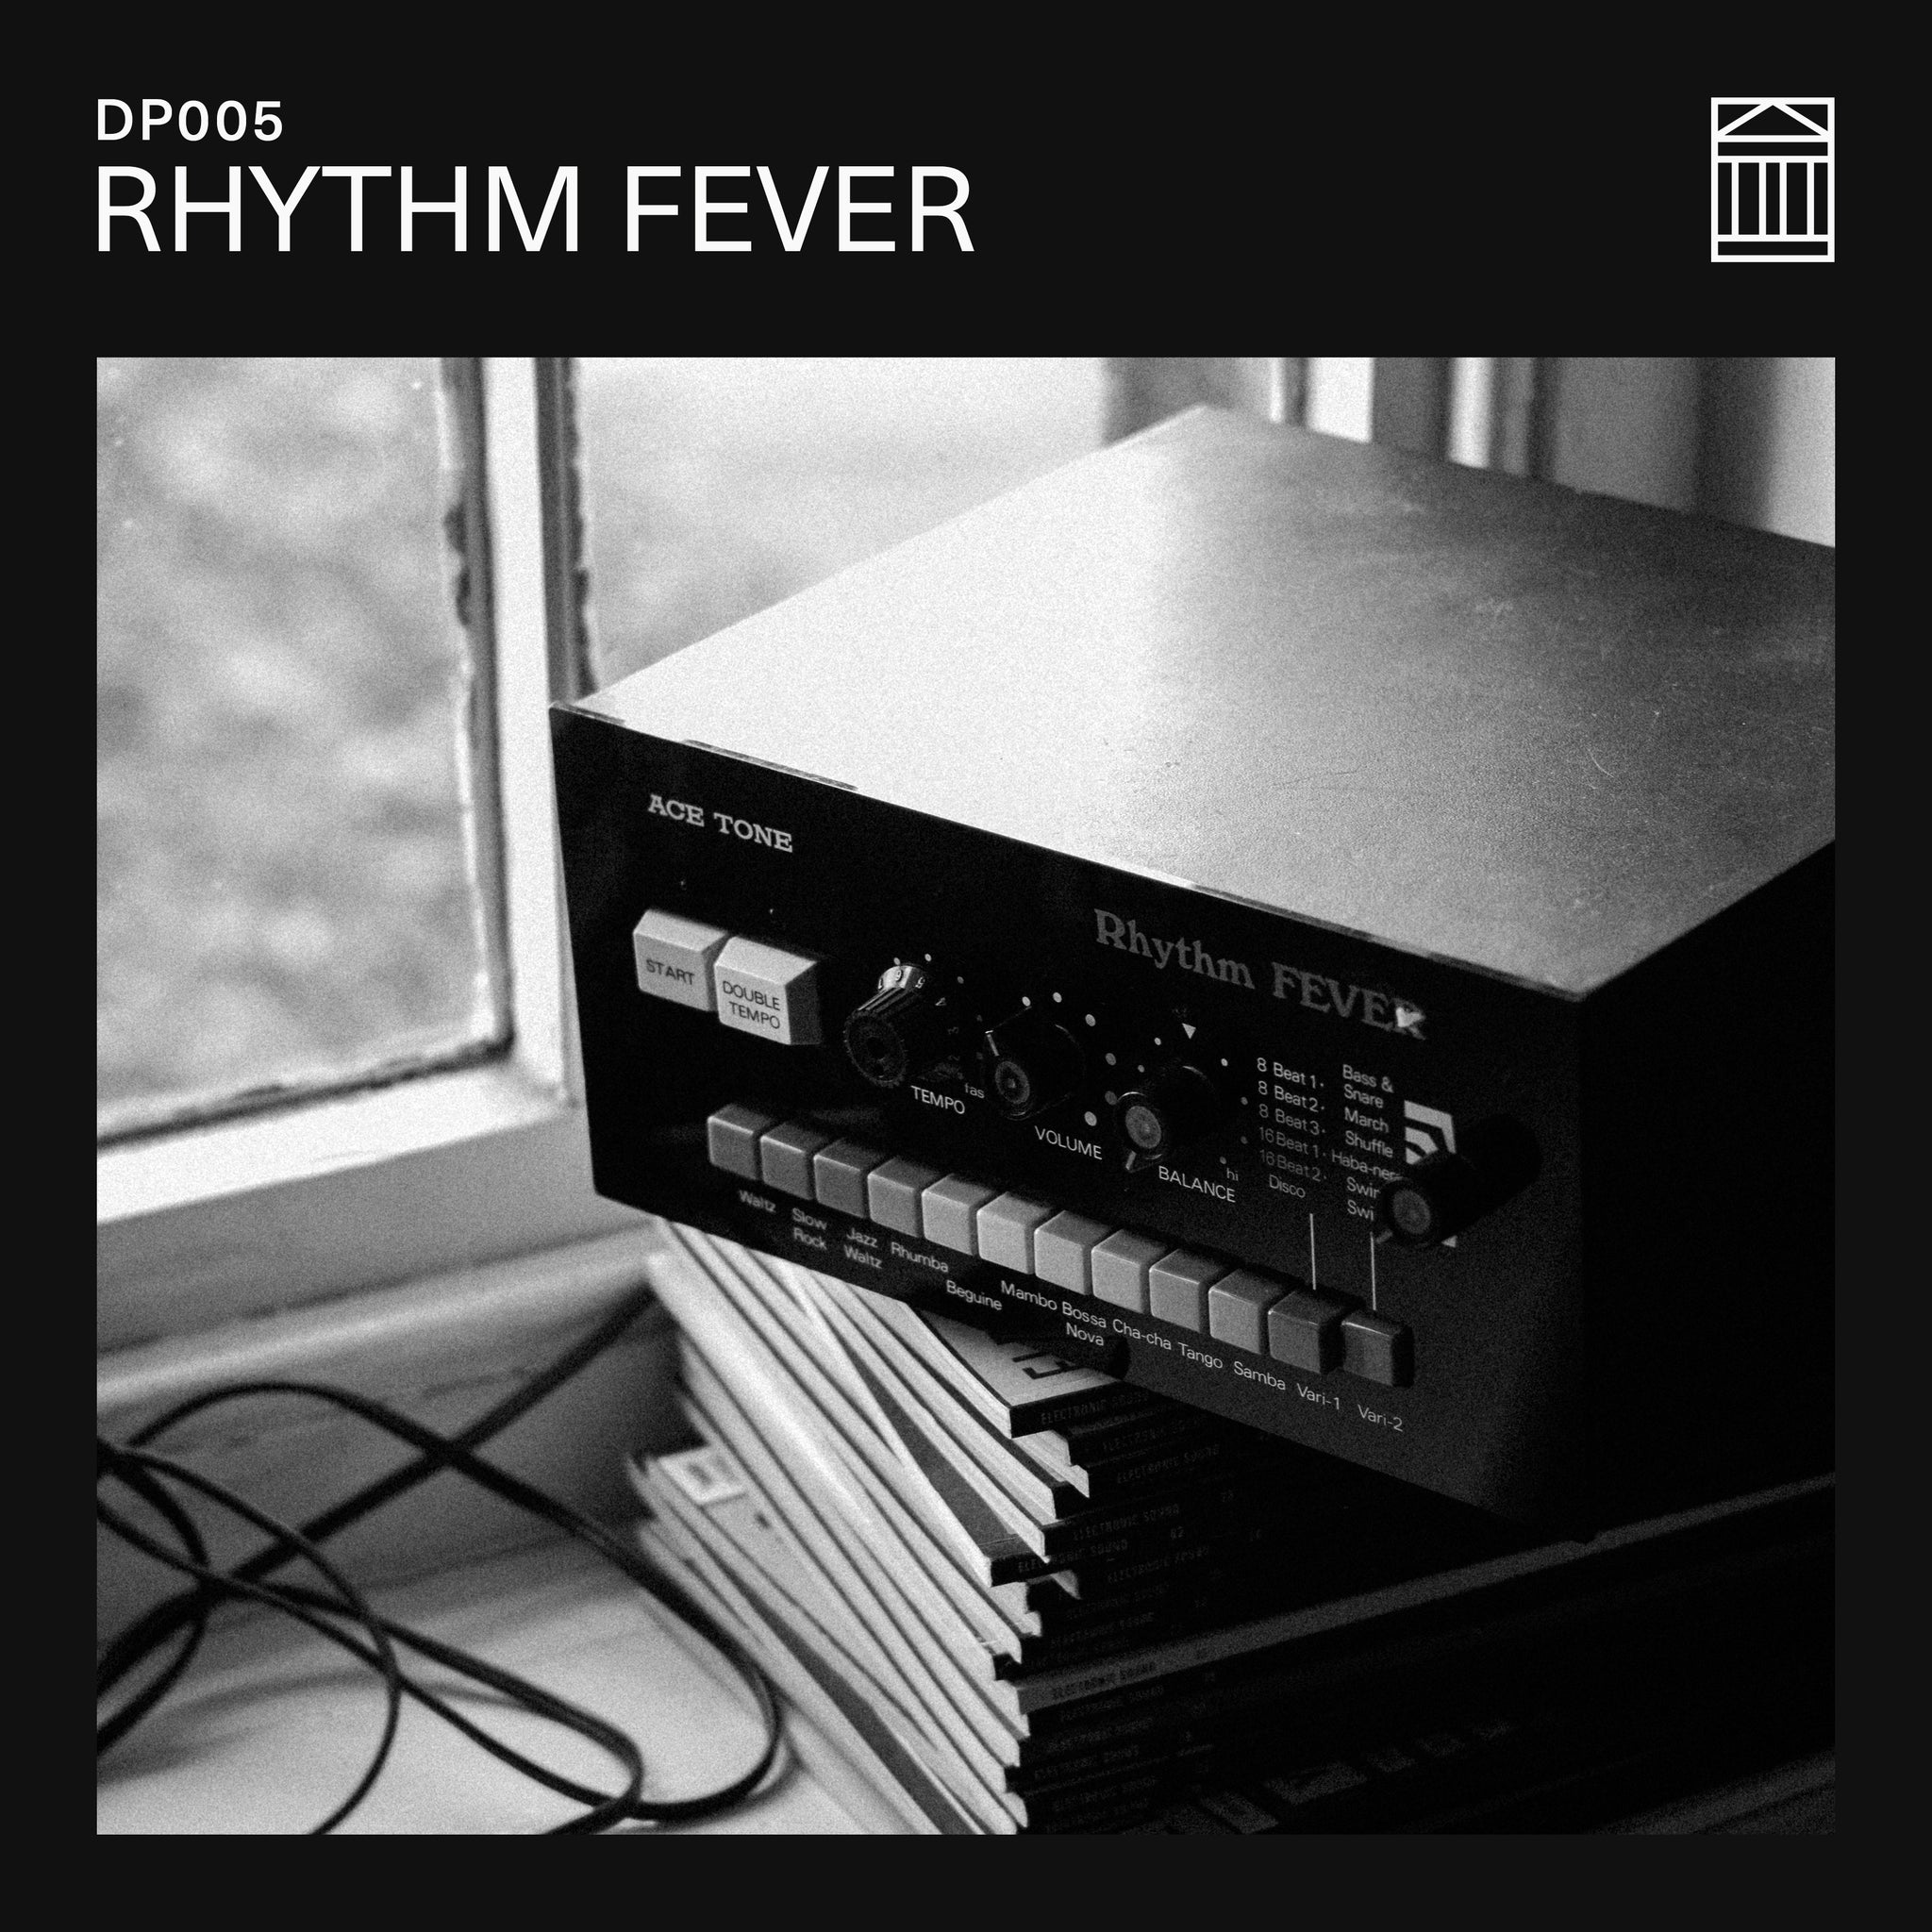 DP005 - RHYTHM FEVER